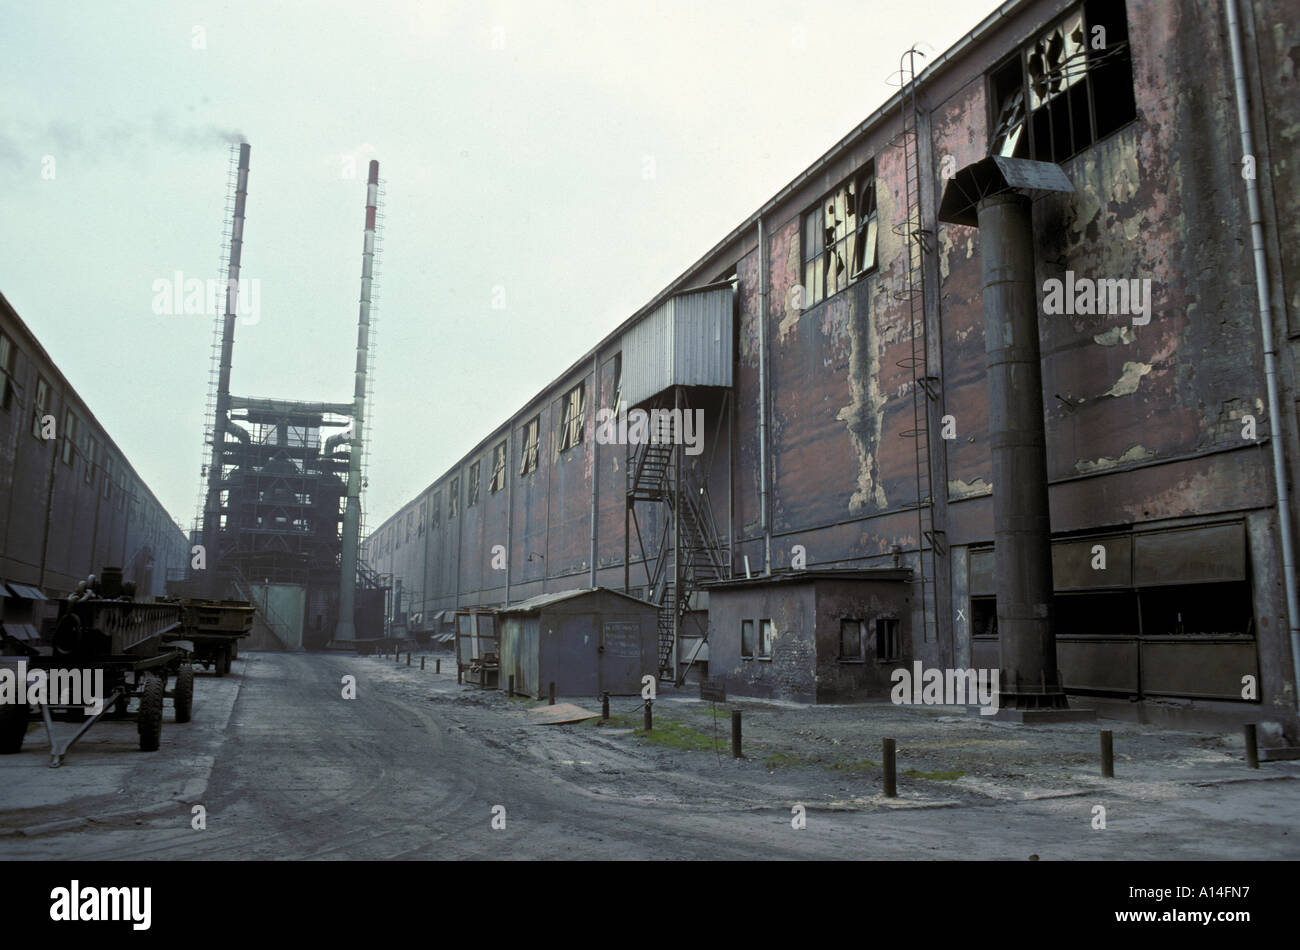 Aluminium factory at Ziar Nad Hronom in central Slovakia Europe Stock Photo